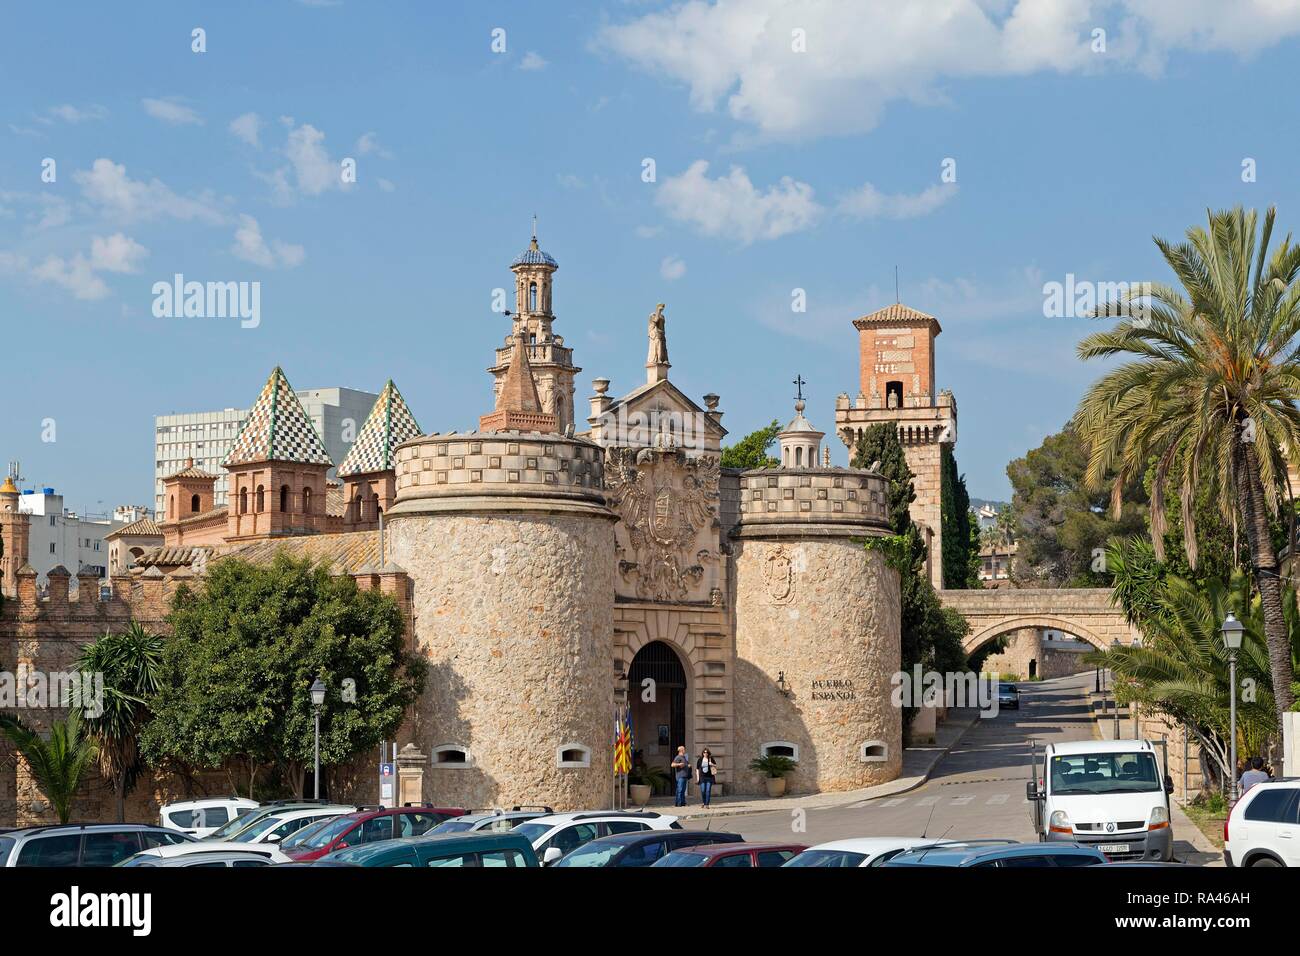 Ingresso principale del centro storico di Toledo, museo village Poble Espanyol, Palma de Mallorca, Spagna Foto Stock